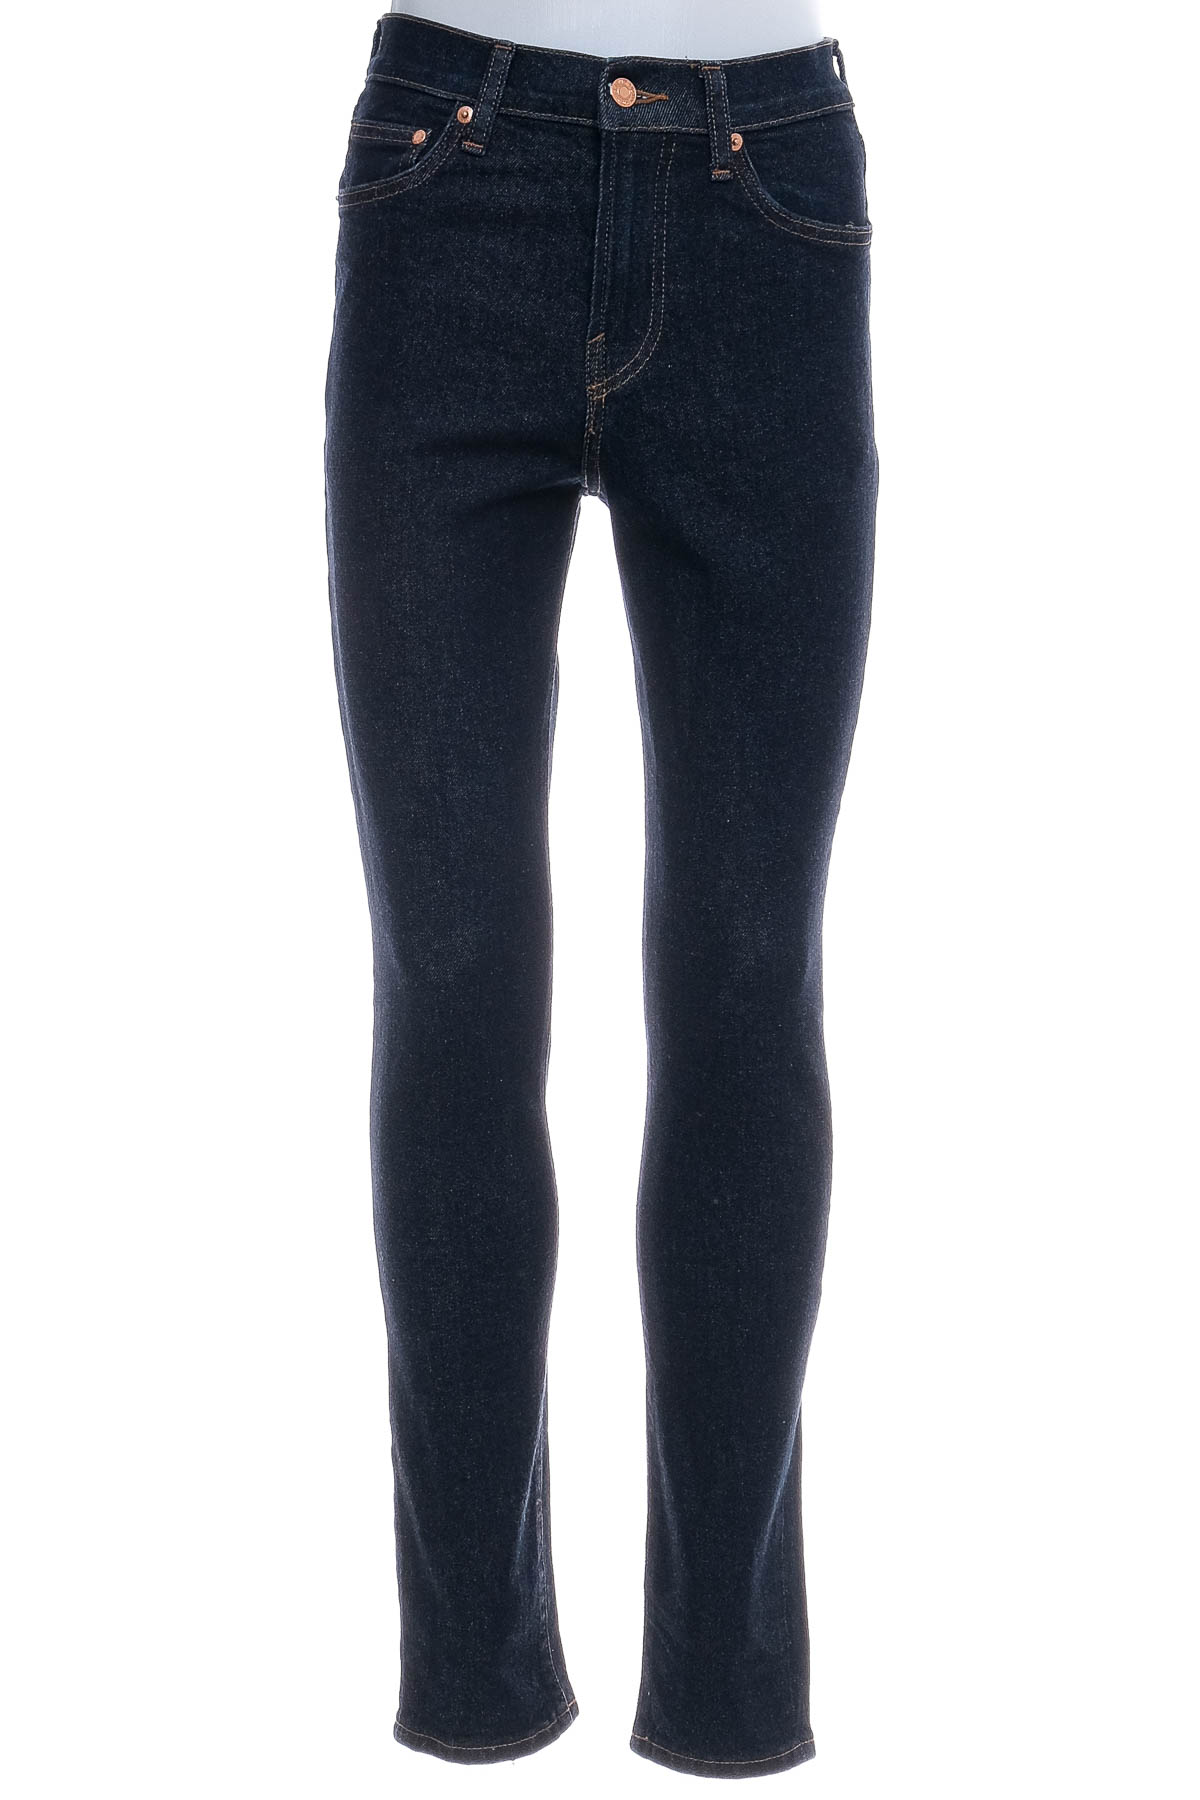 Jeans pentru bărbăți - H&M - 0